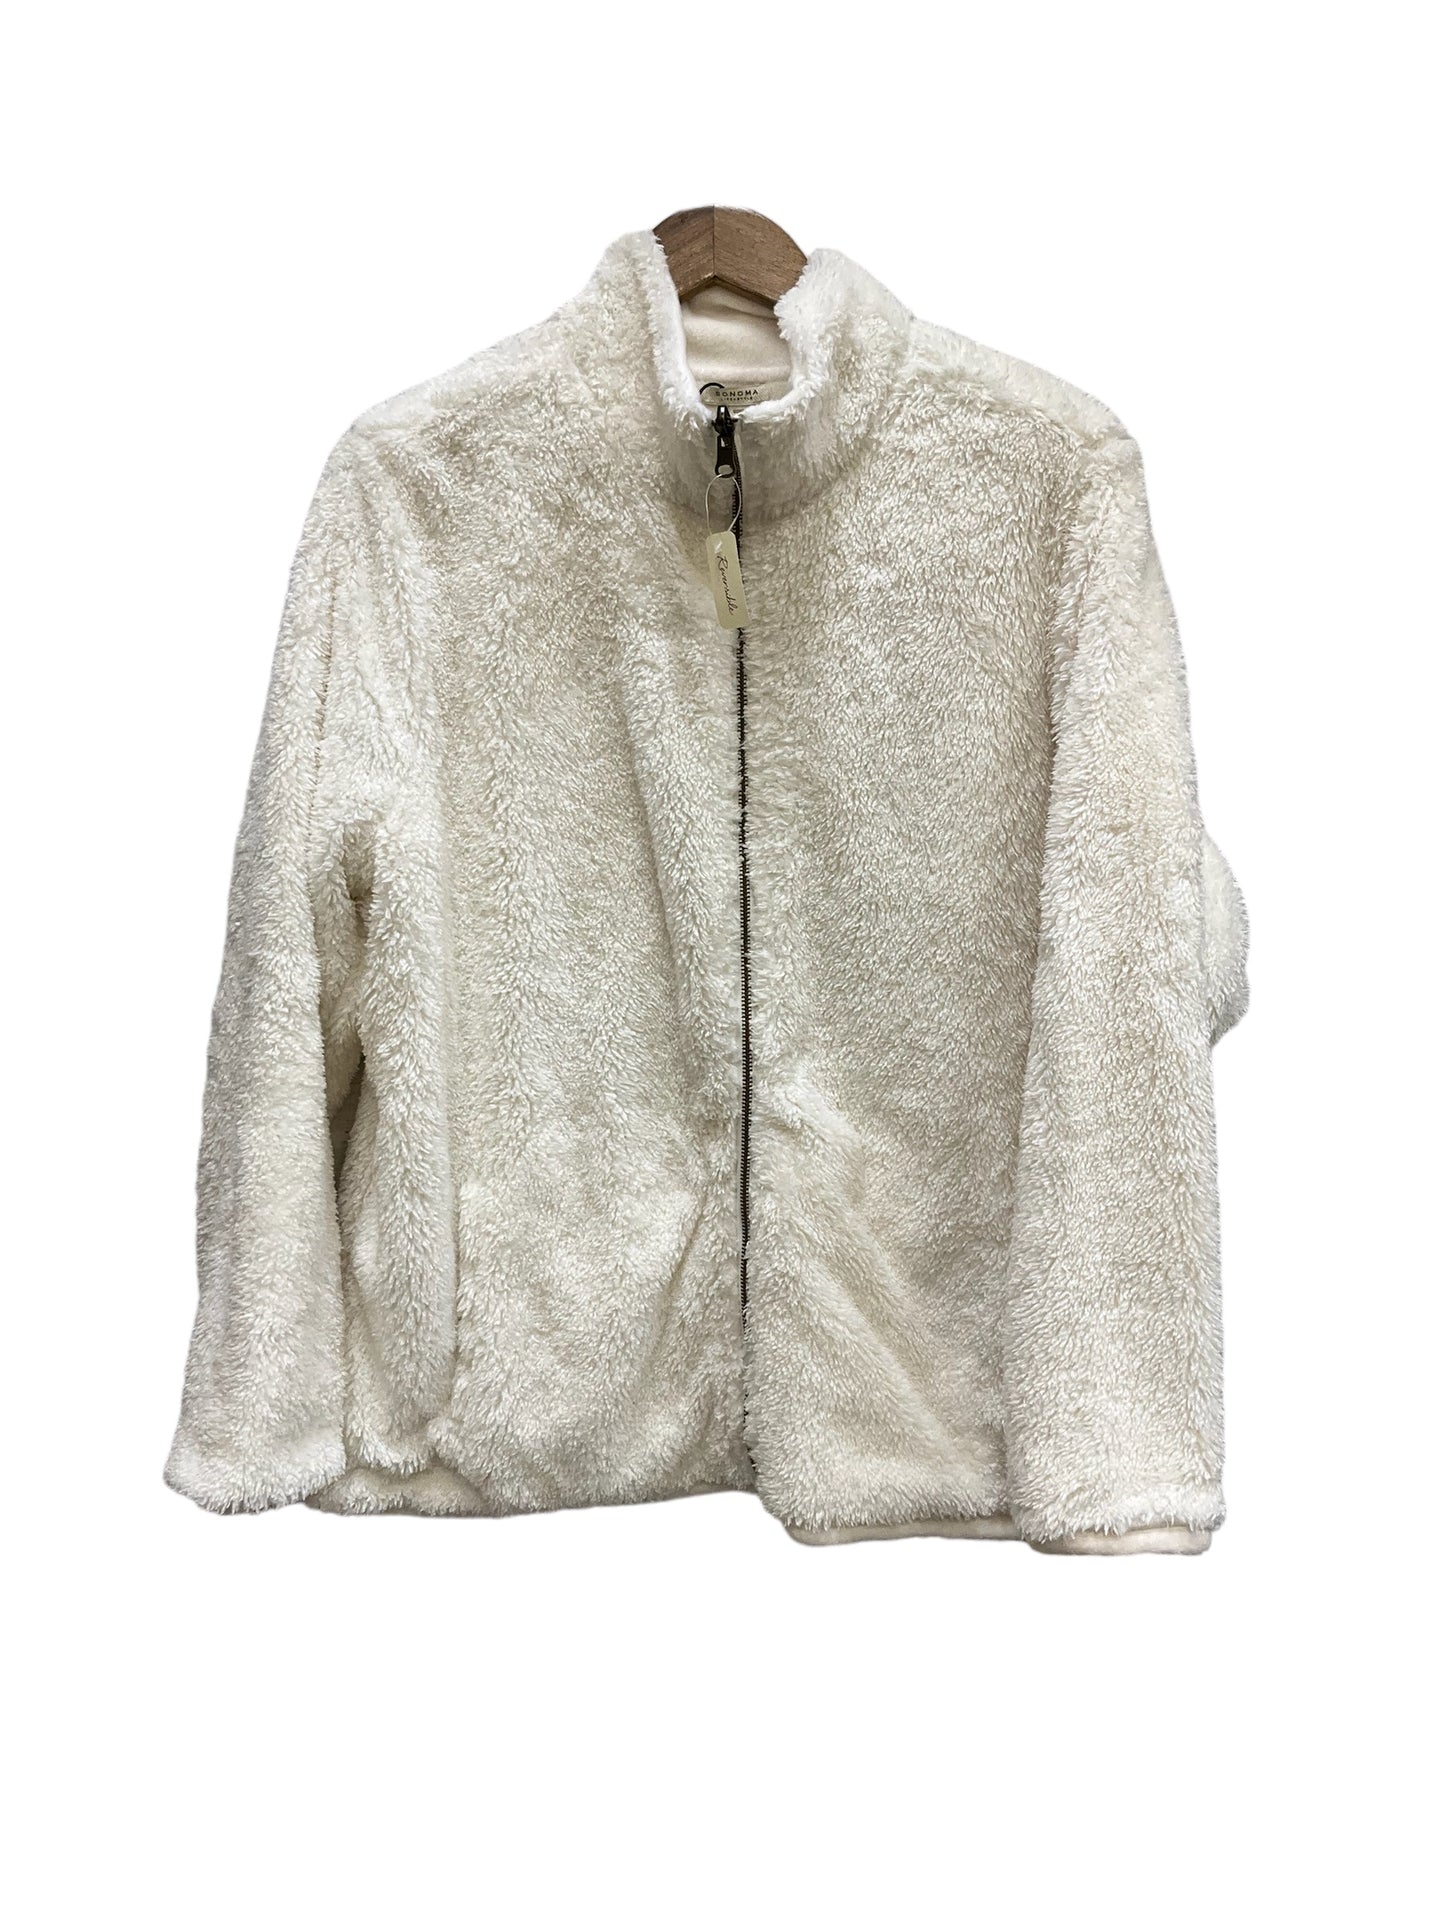 Jacket Fleece By Sonoma  Size: 1x